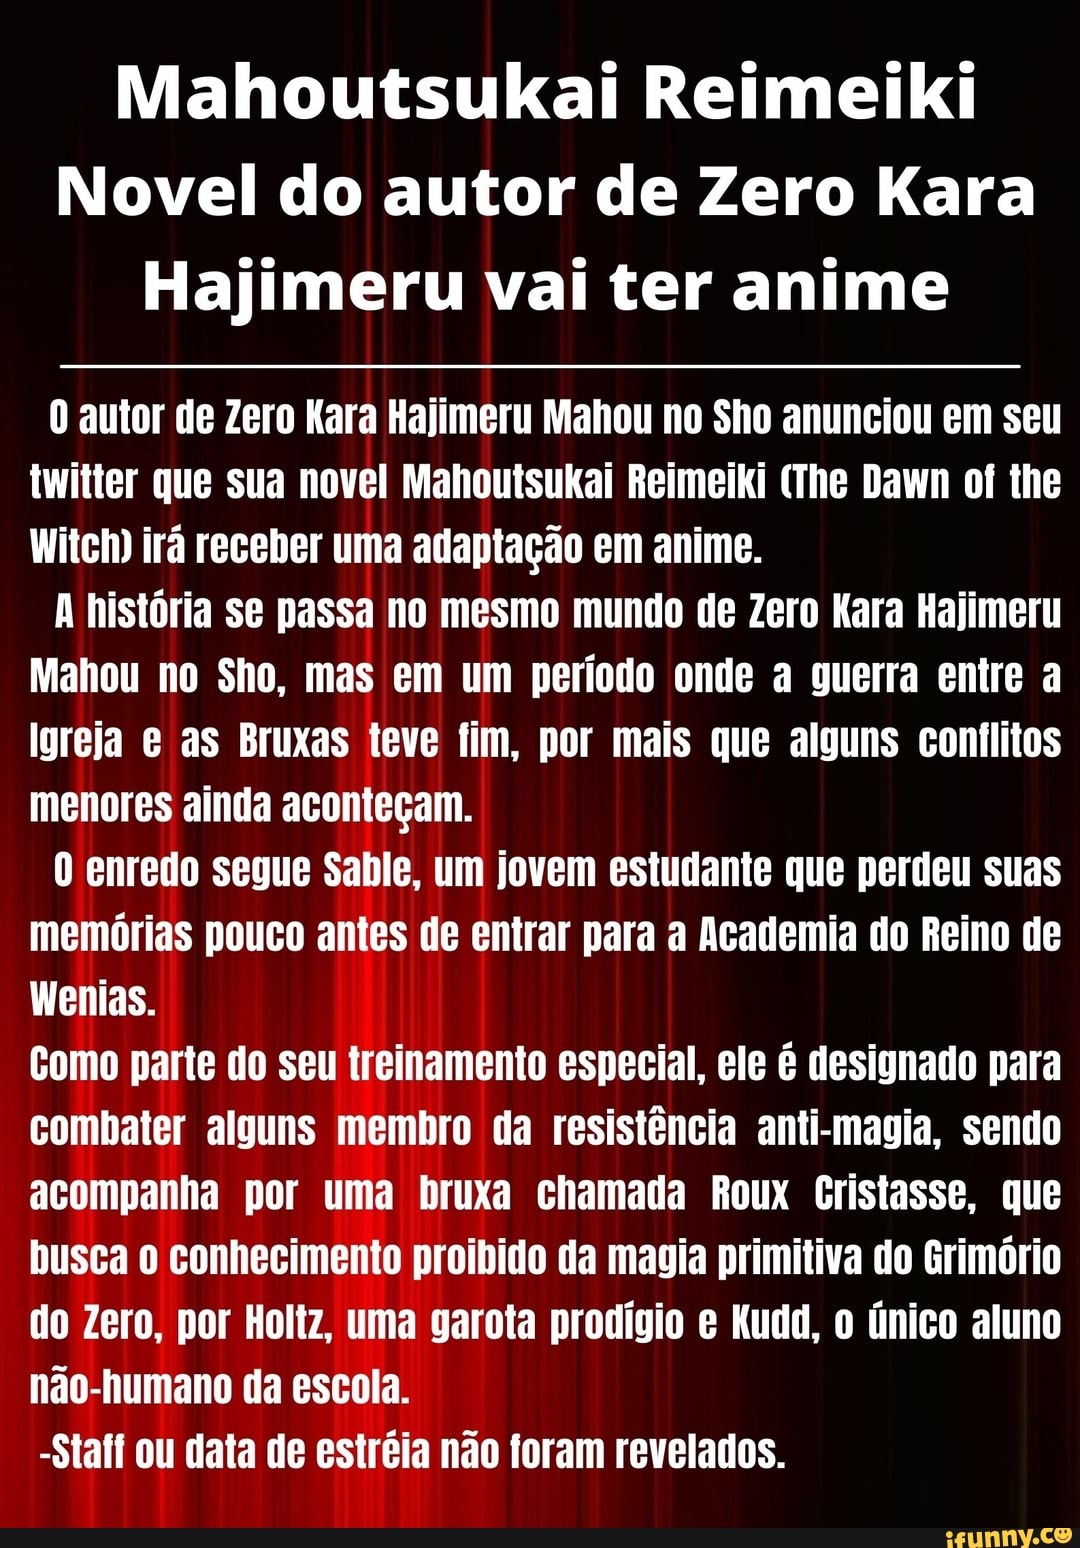 Hajimeru memes. Best Collection of funny Hajimeru pictures on iFunny Brazil